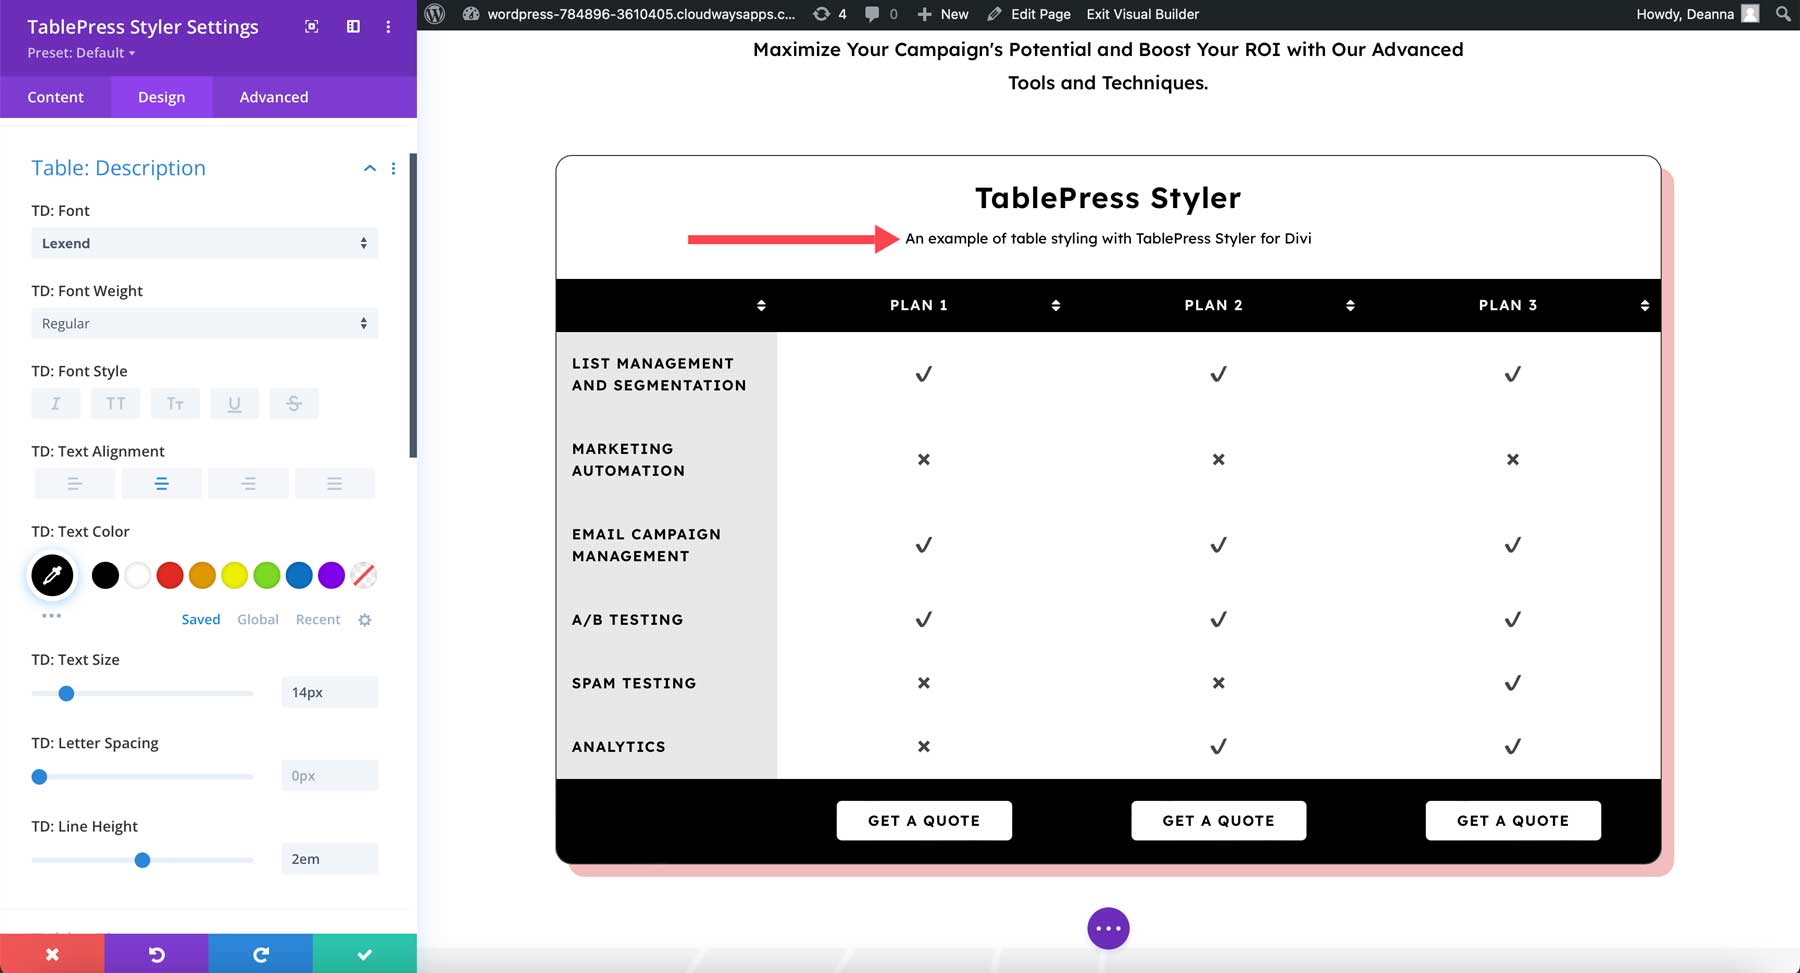 TablePress Styler Description